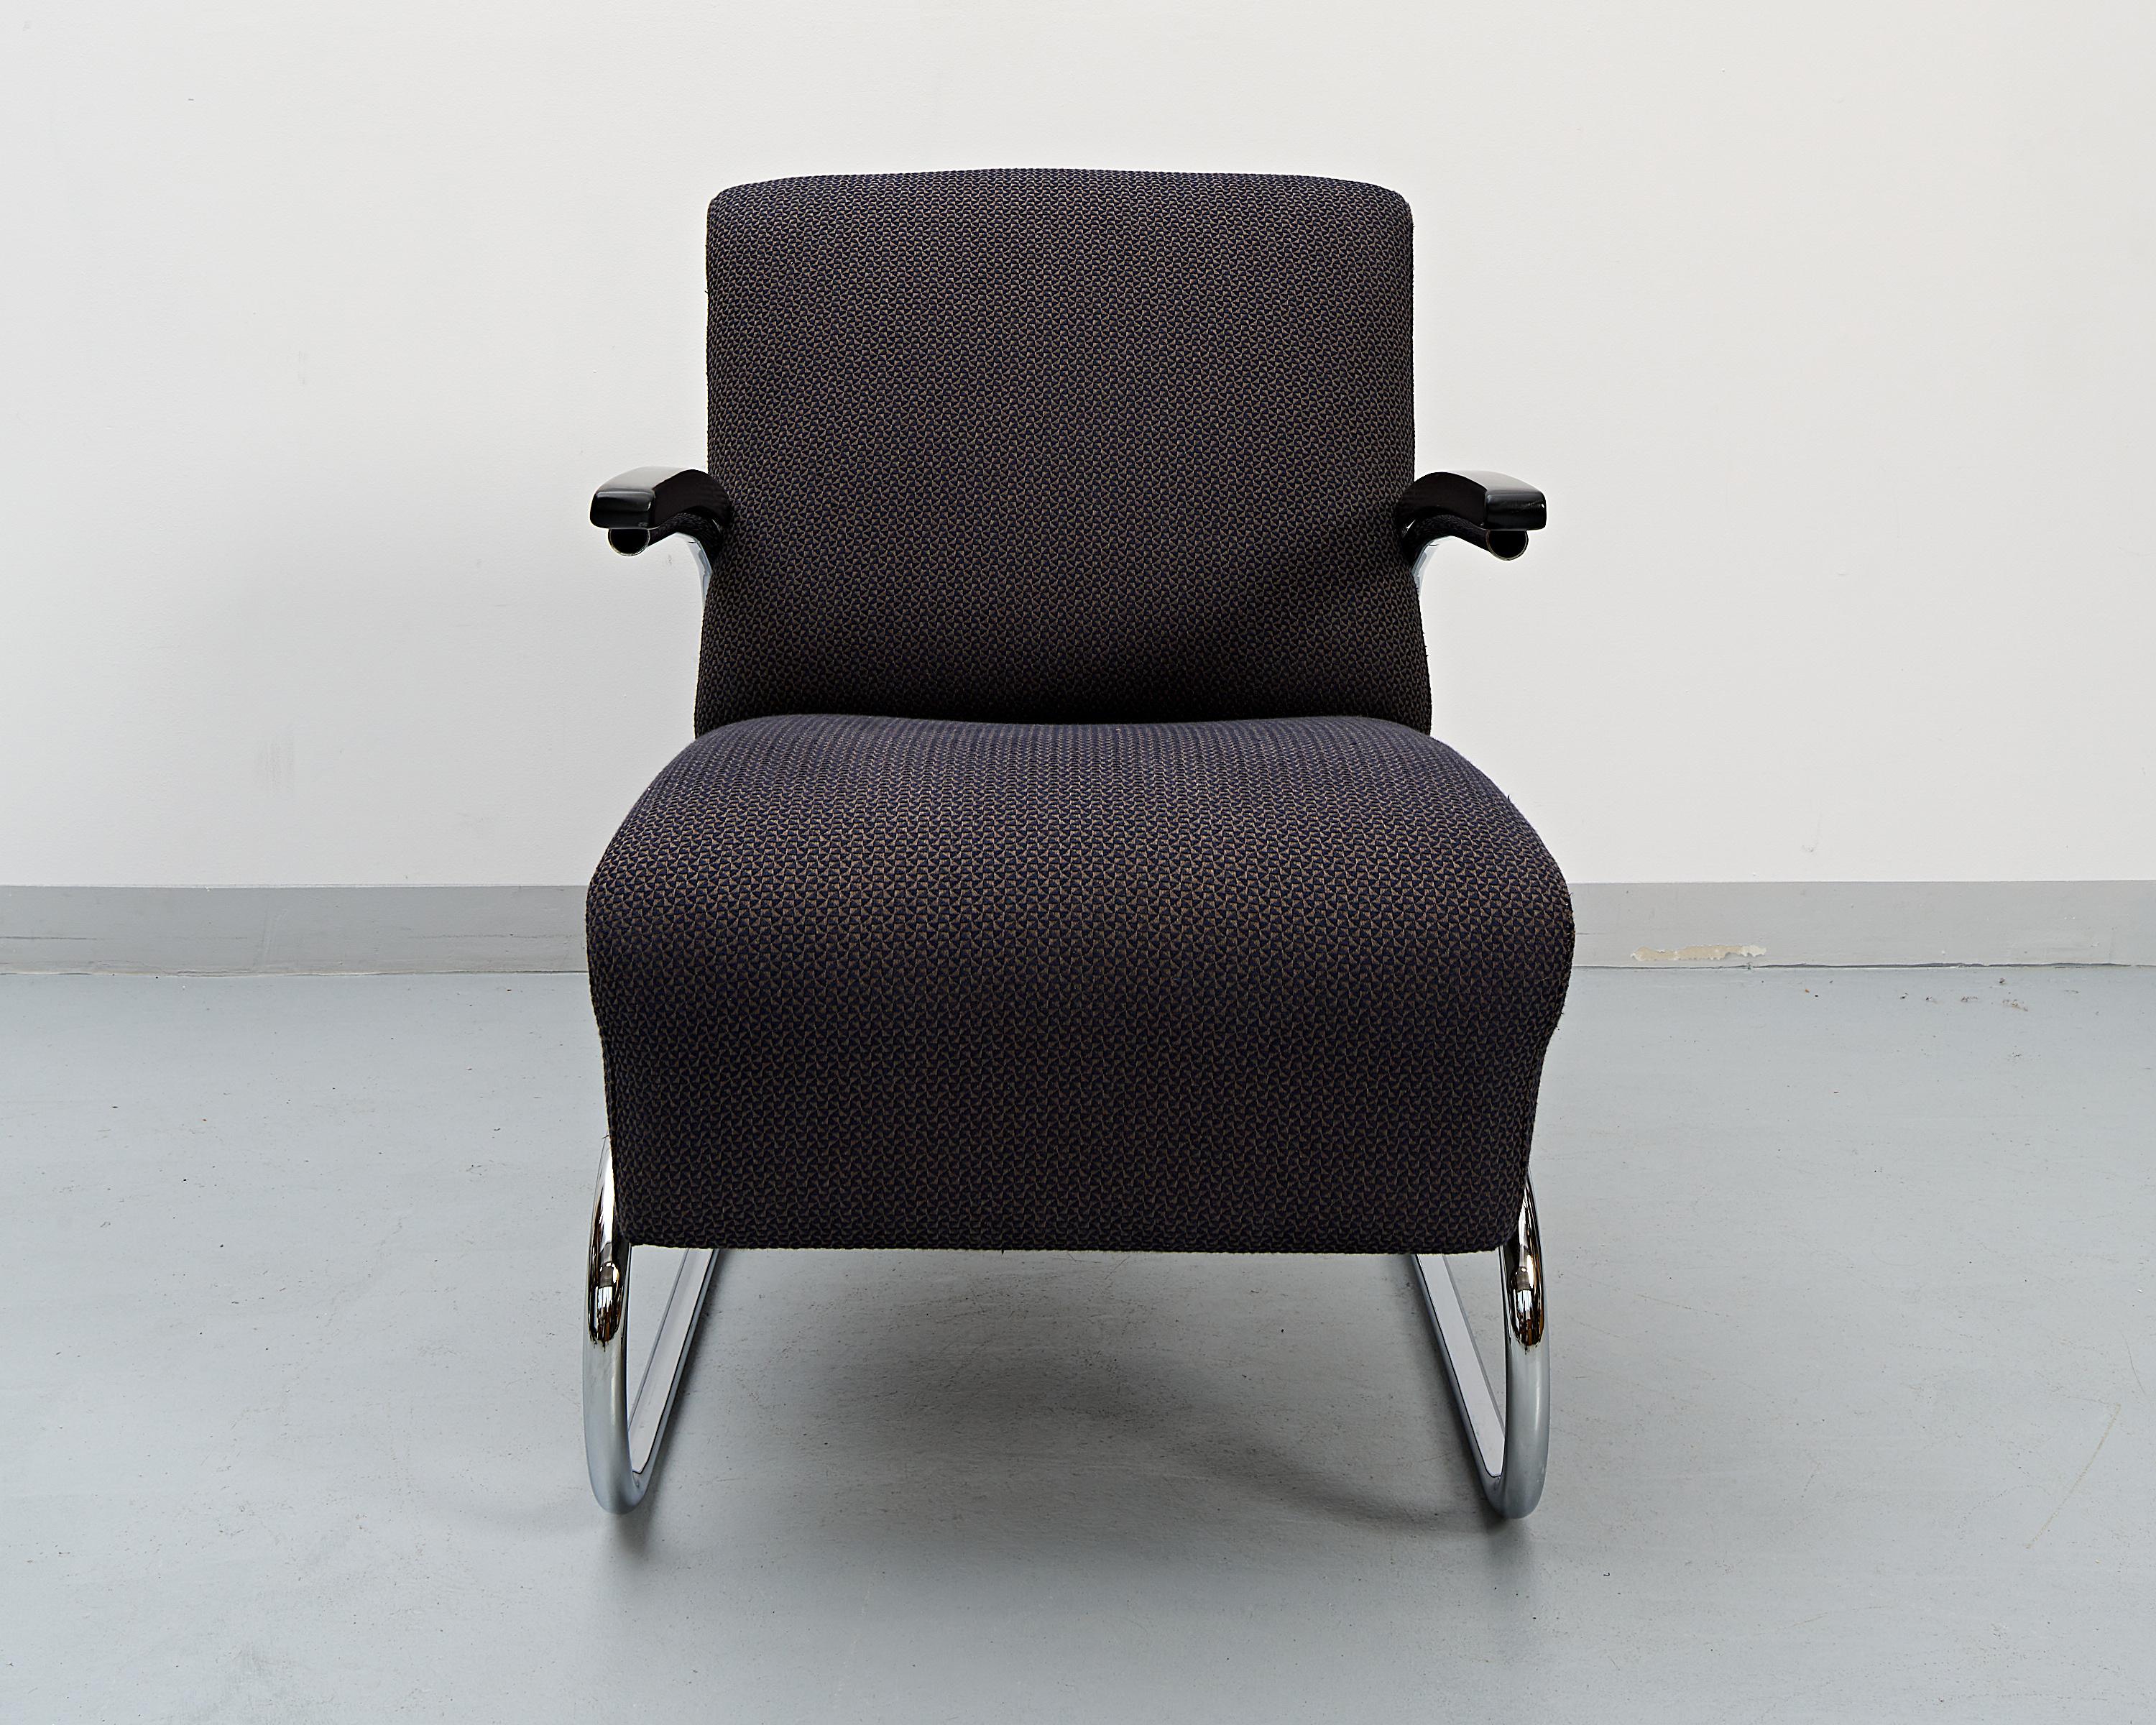 Un fauteuil luge élégant et exceptionnellement confortable fabriqué par Mücke & Melder sous licence Thonet dans une ancienne manufacture de Tchécoslovaquie. 

La structure tubulaire chromée, ainsi que les accoudoirs incurvés en hêtre massif, ont été